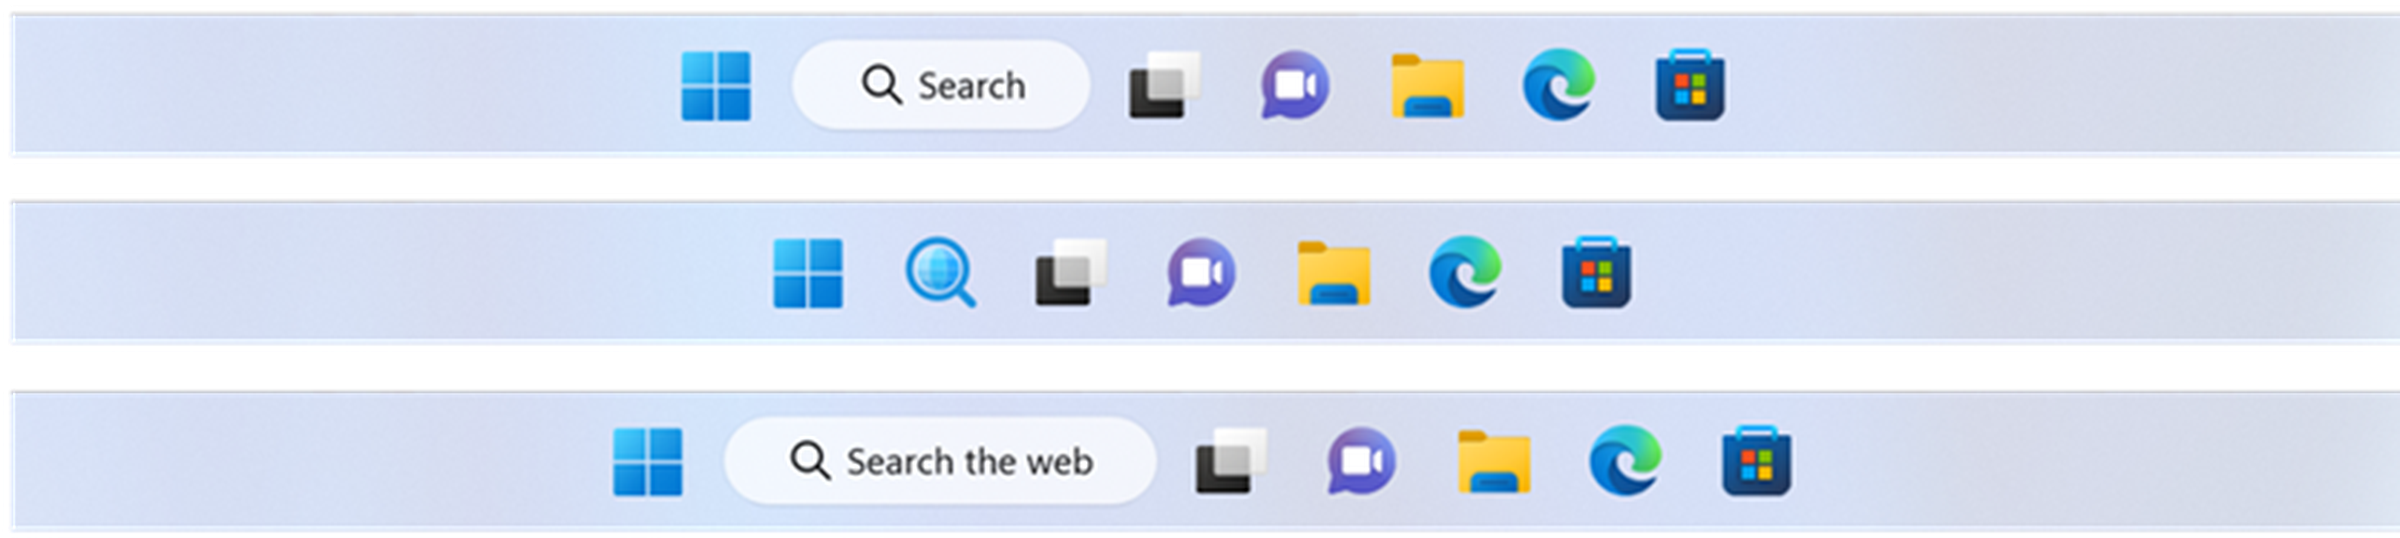 The search taskbar UI changes.